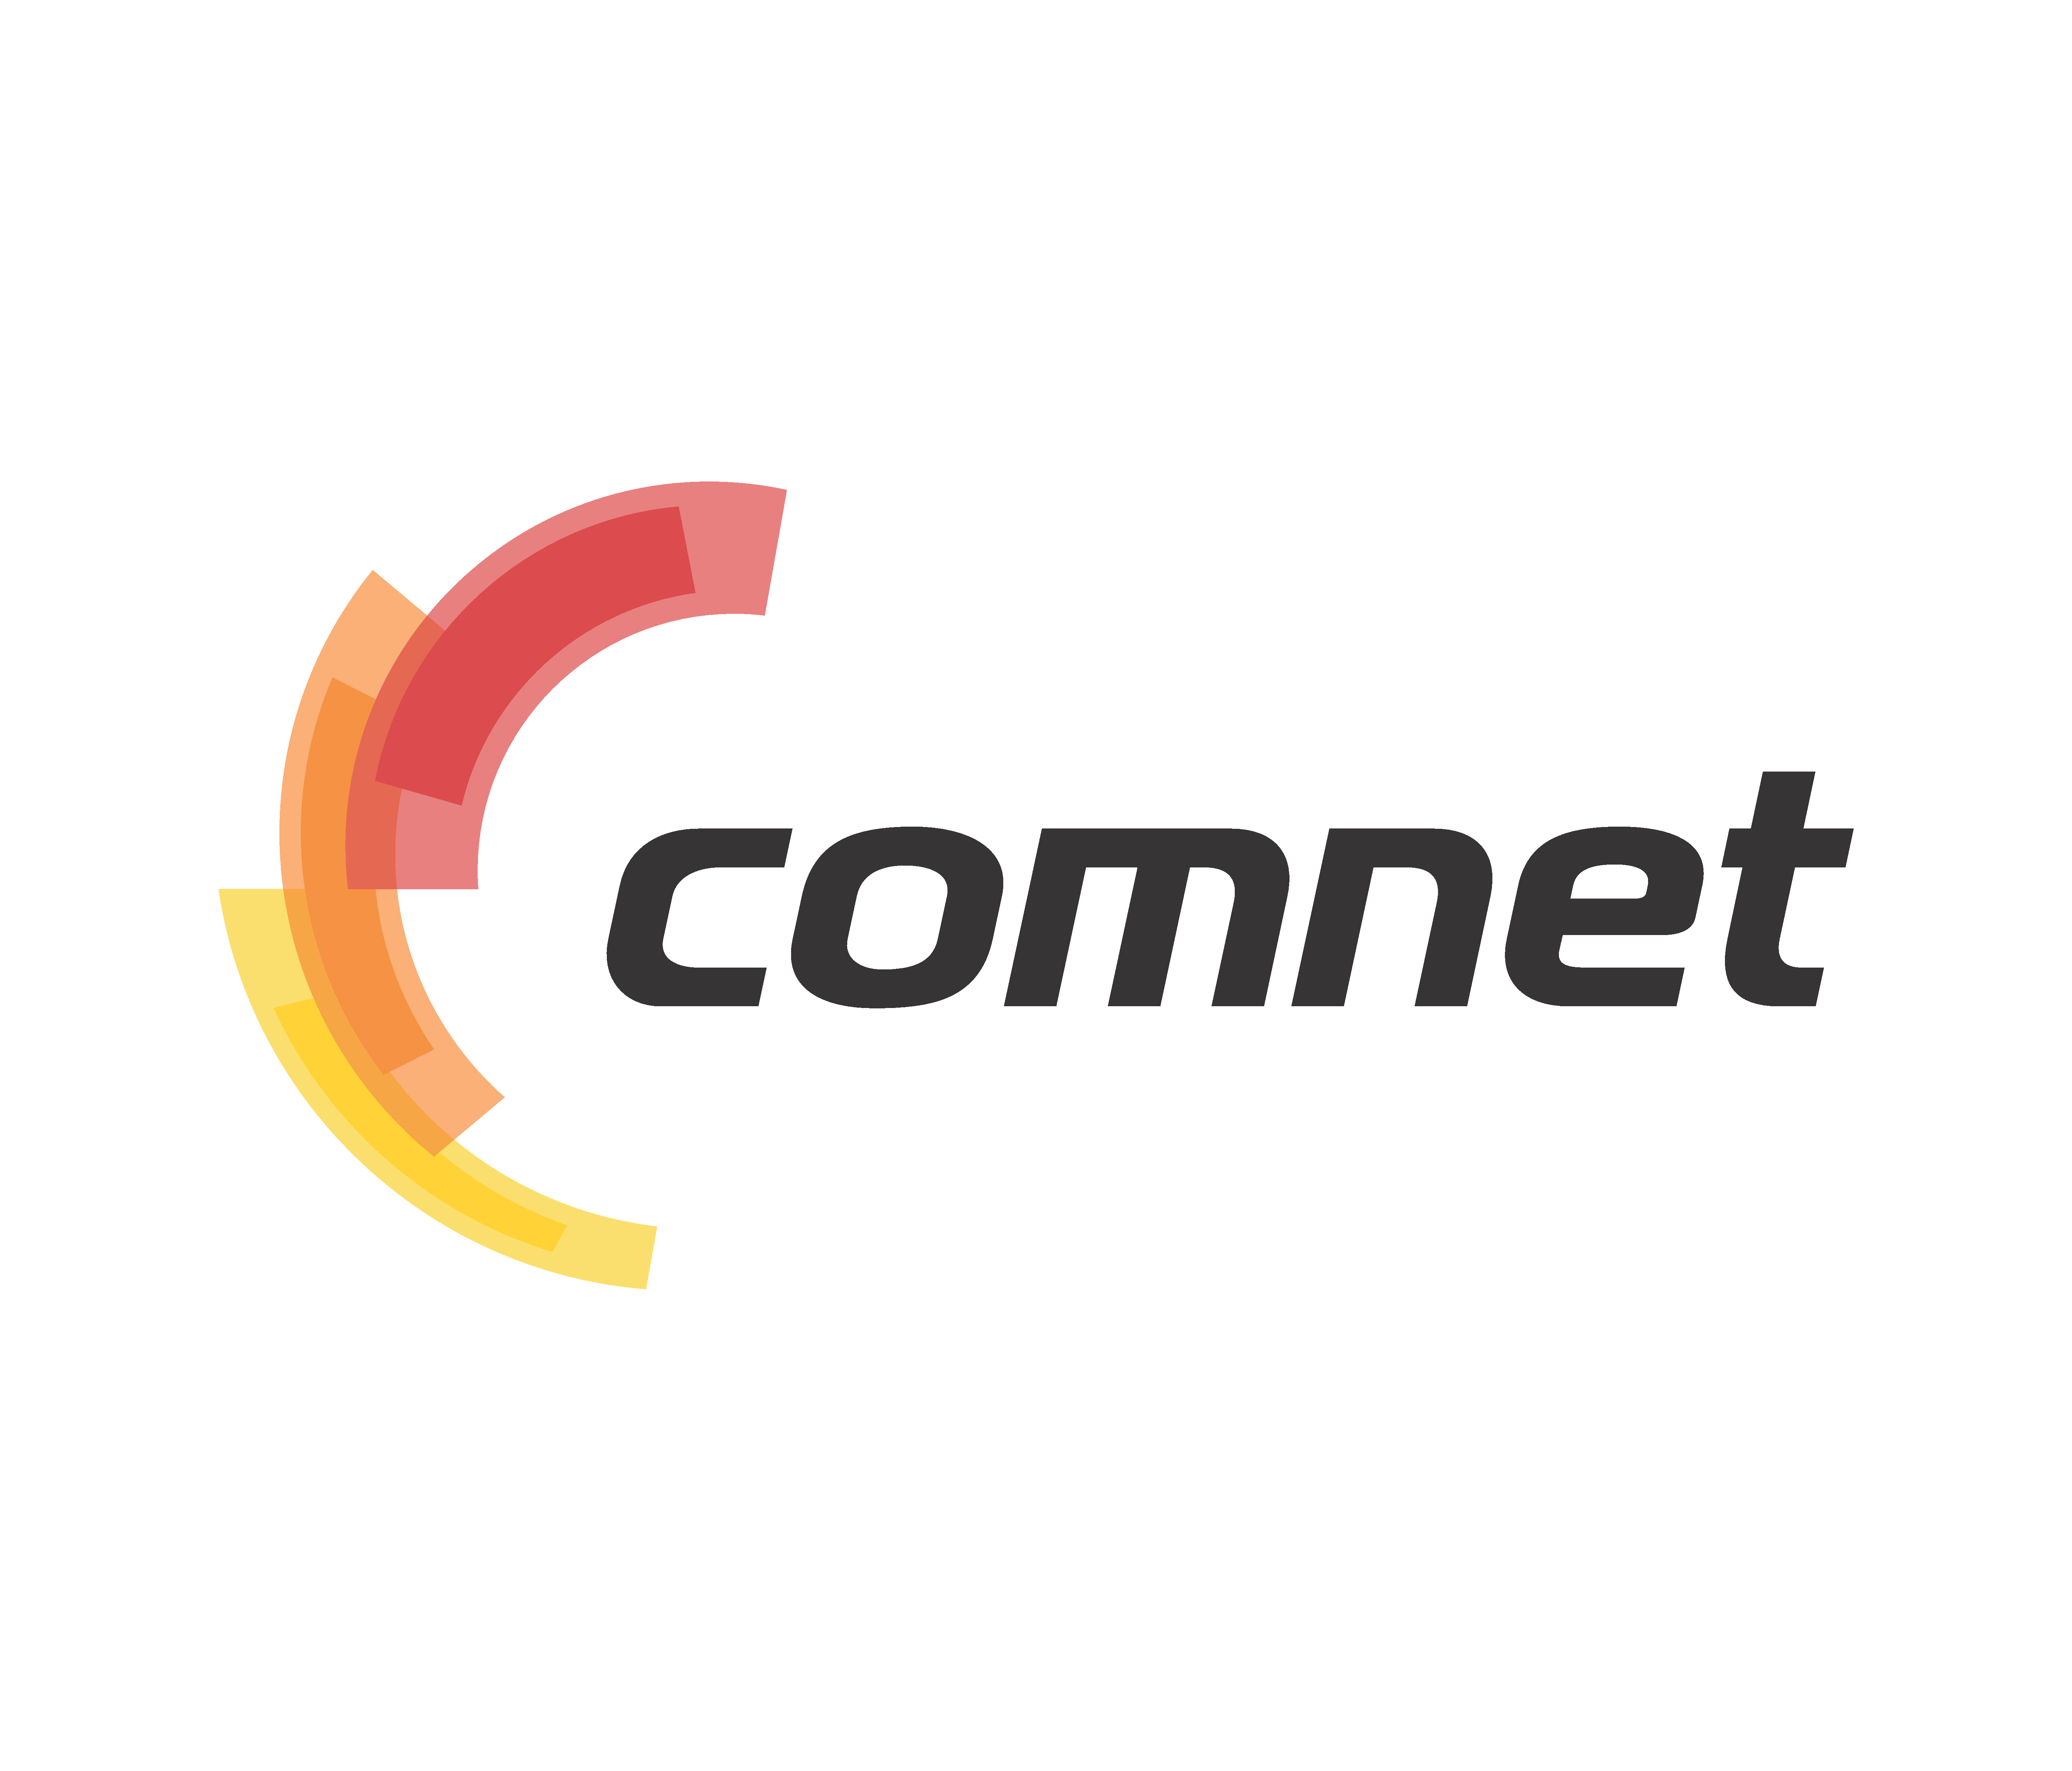 COMNET.uz. COMNET logo. Логотип интернет провайдера. COMNET uz logo.